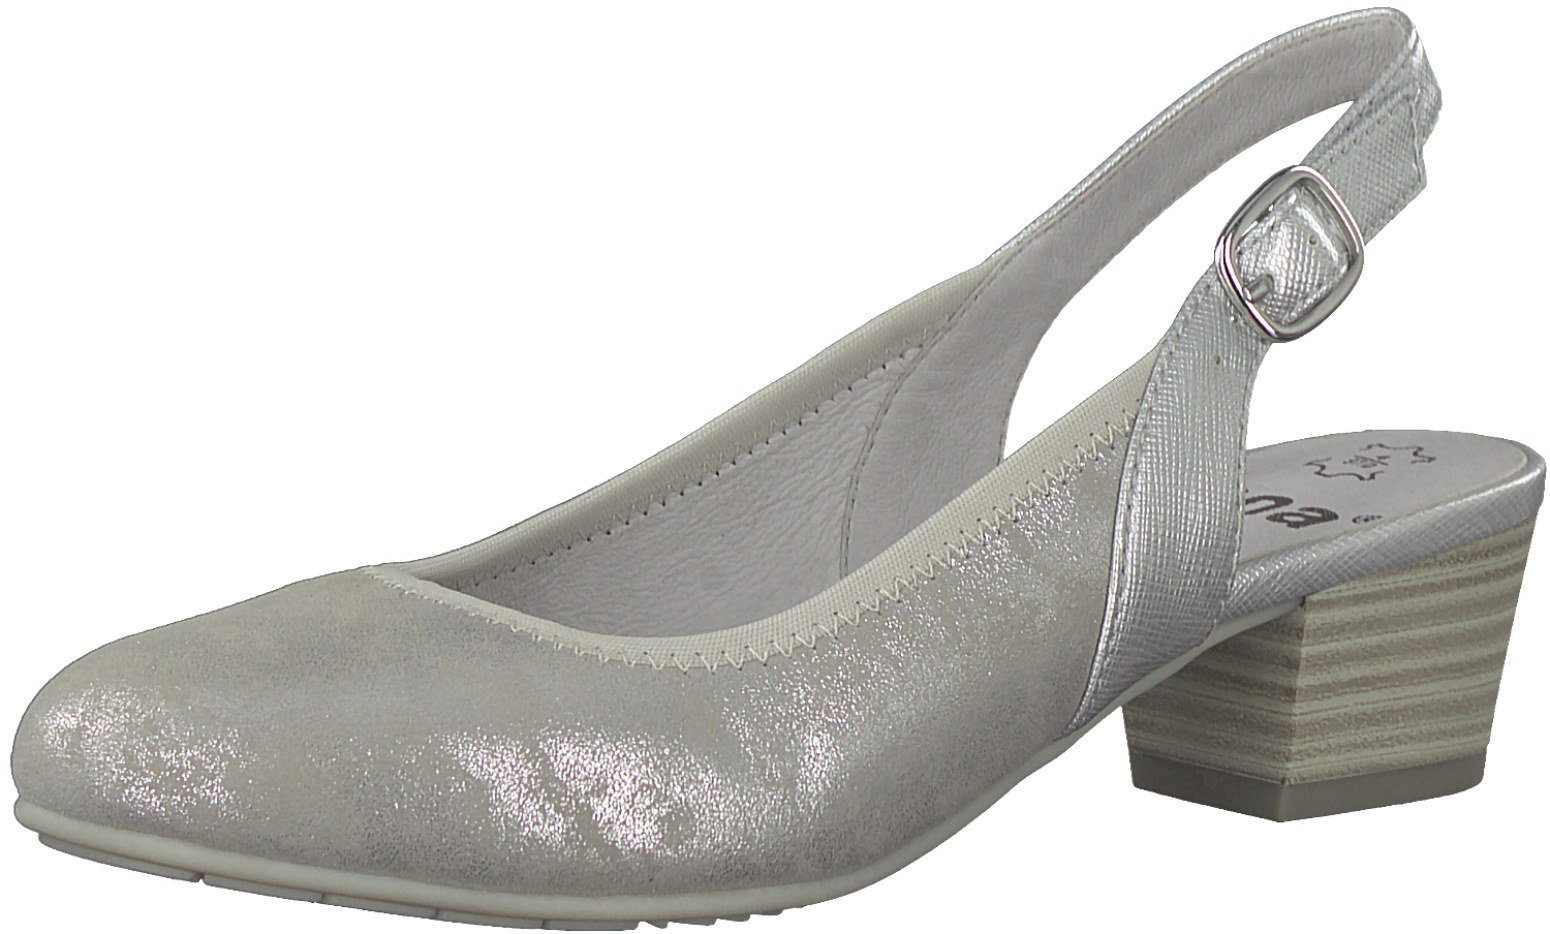 Туфли женские Jana, цвет: серебристый. 8-8-29590-20-212/220. Размер 39